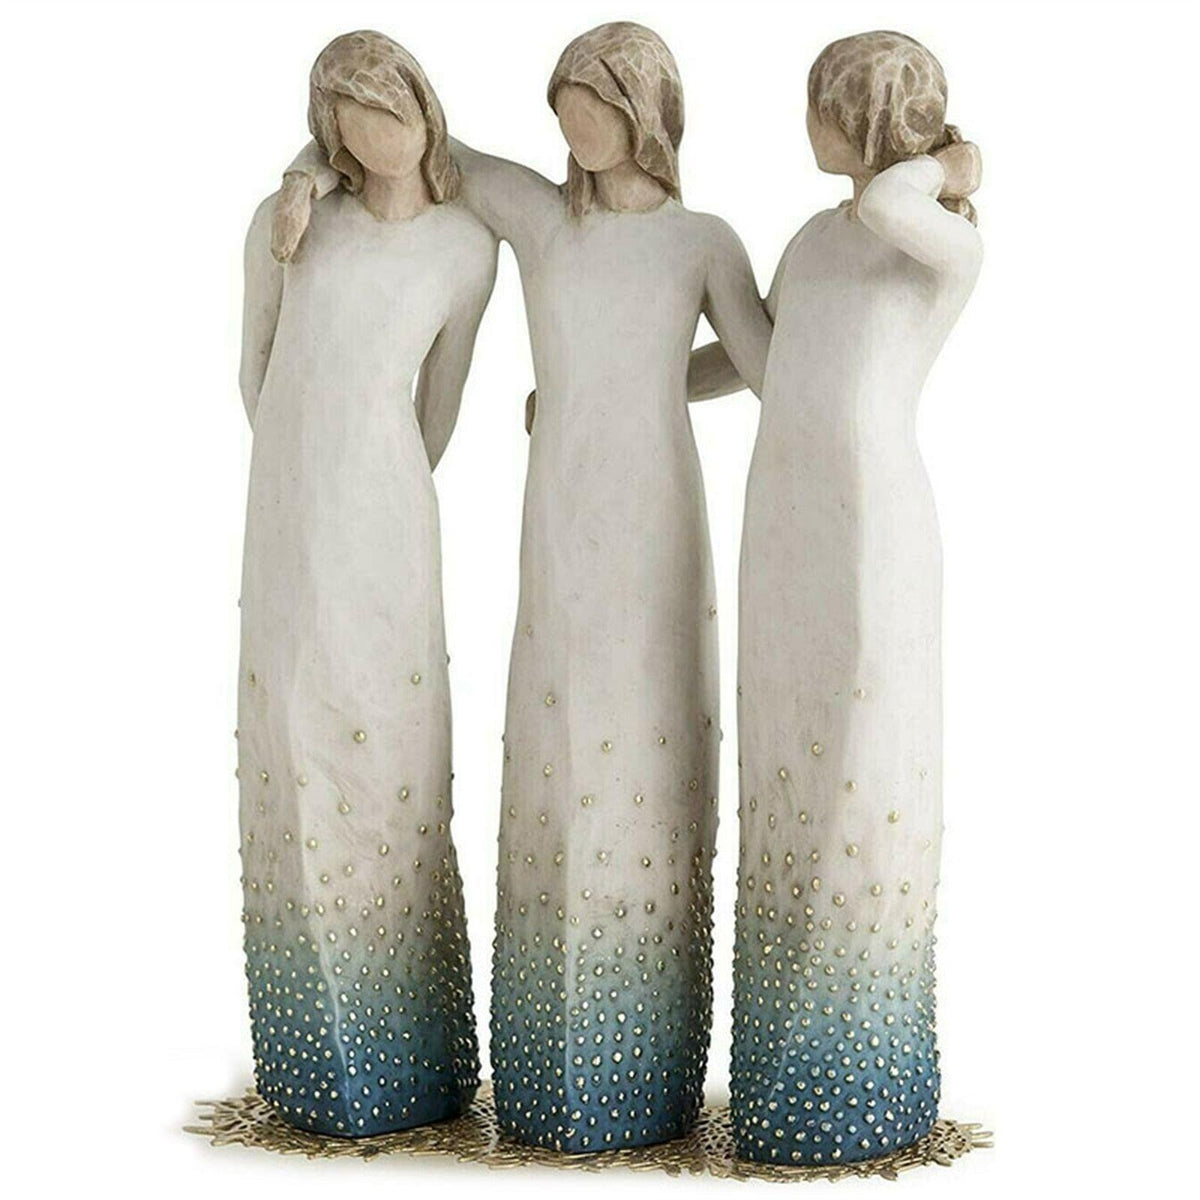 Escultura 3 Irmãs Opção: 3 Irmãs Escultura 3 Irmãs hoje com até 50% OFF + Frete Grátis e Seguro. Use o cupom "1COMPRA" e ganhe desconto. Mais de 25.000 clientes.